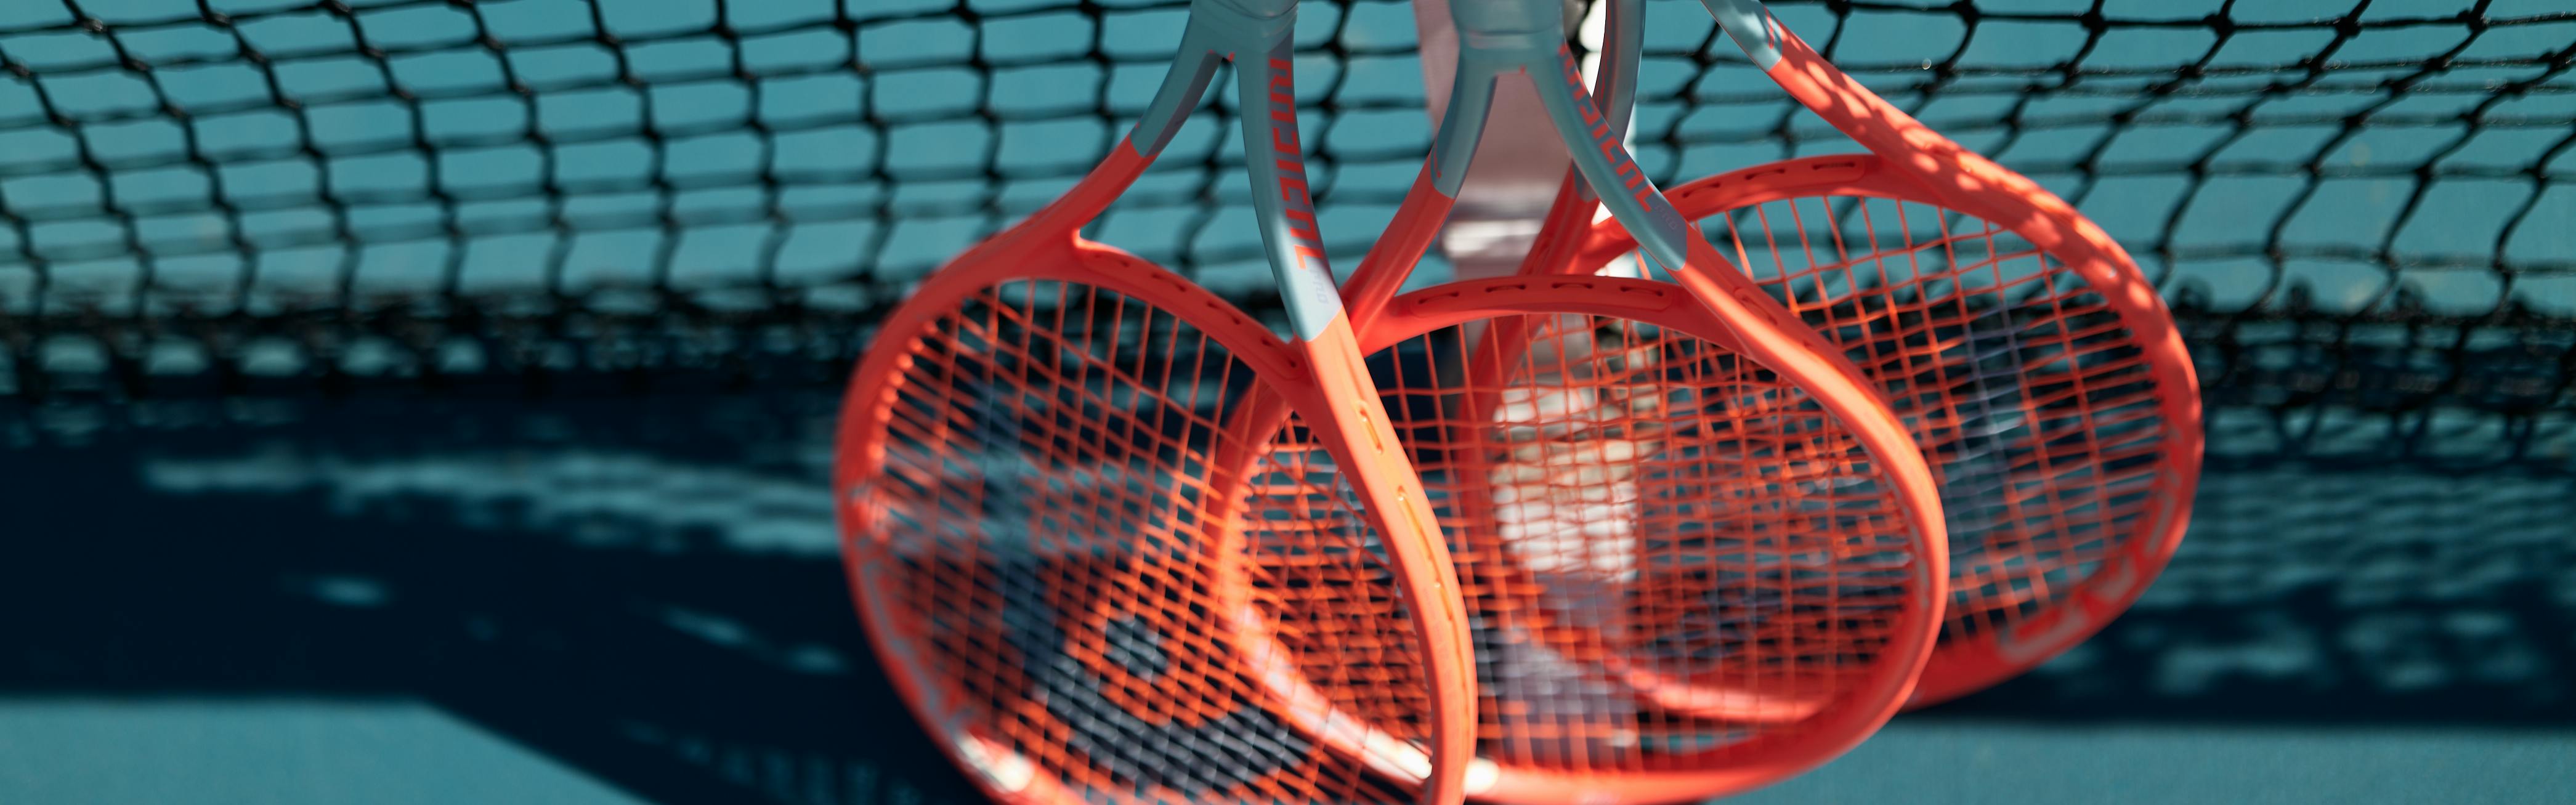 Three Head Radical racquets lean against a net.